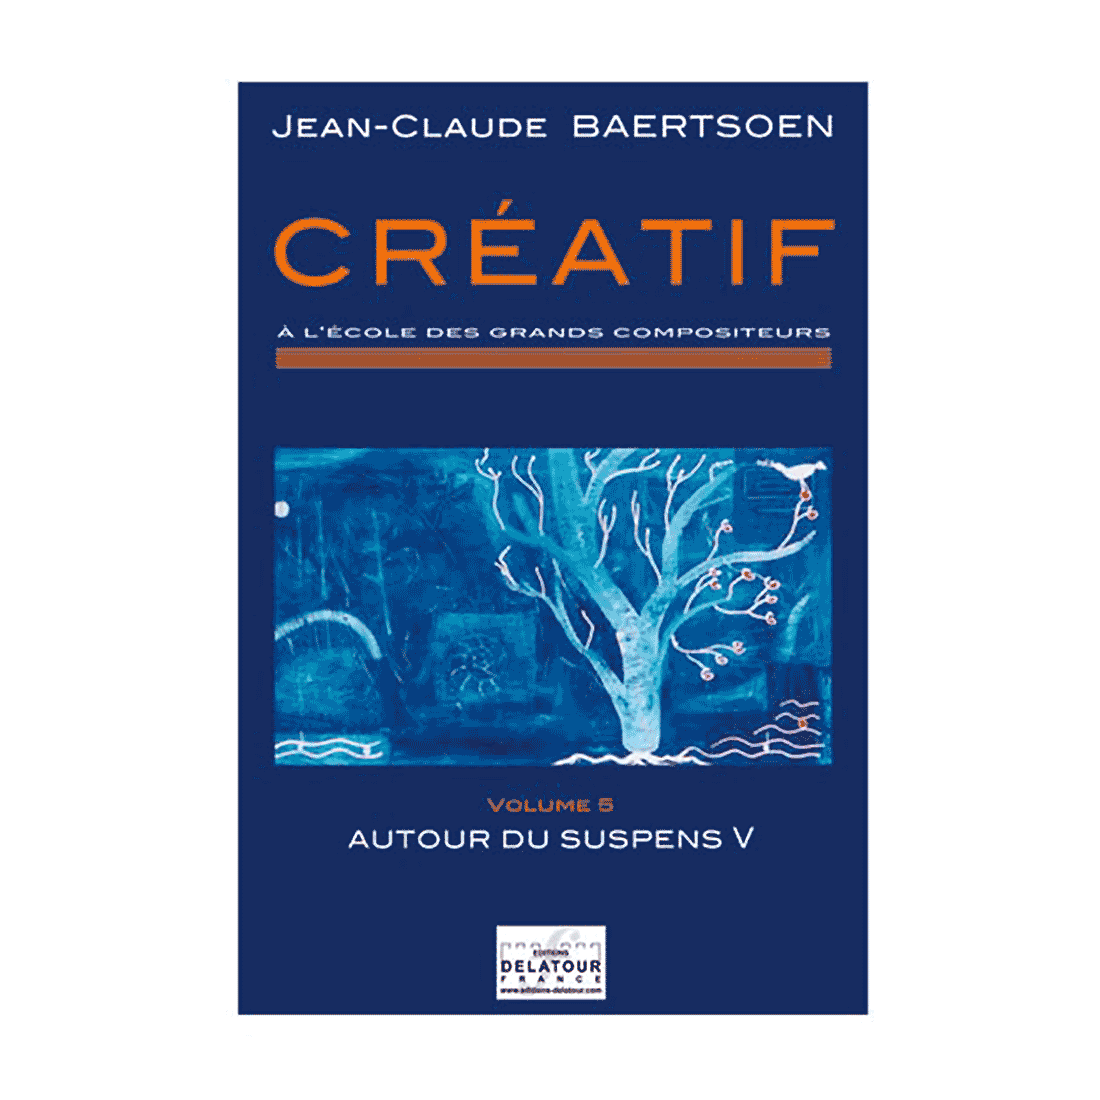 CREATIF A l'école des grands compositeurs - Vol. 5